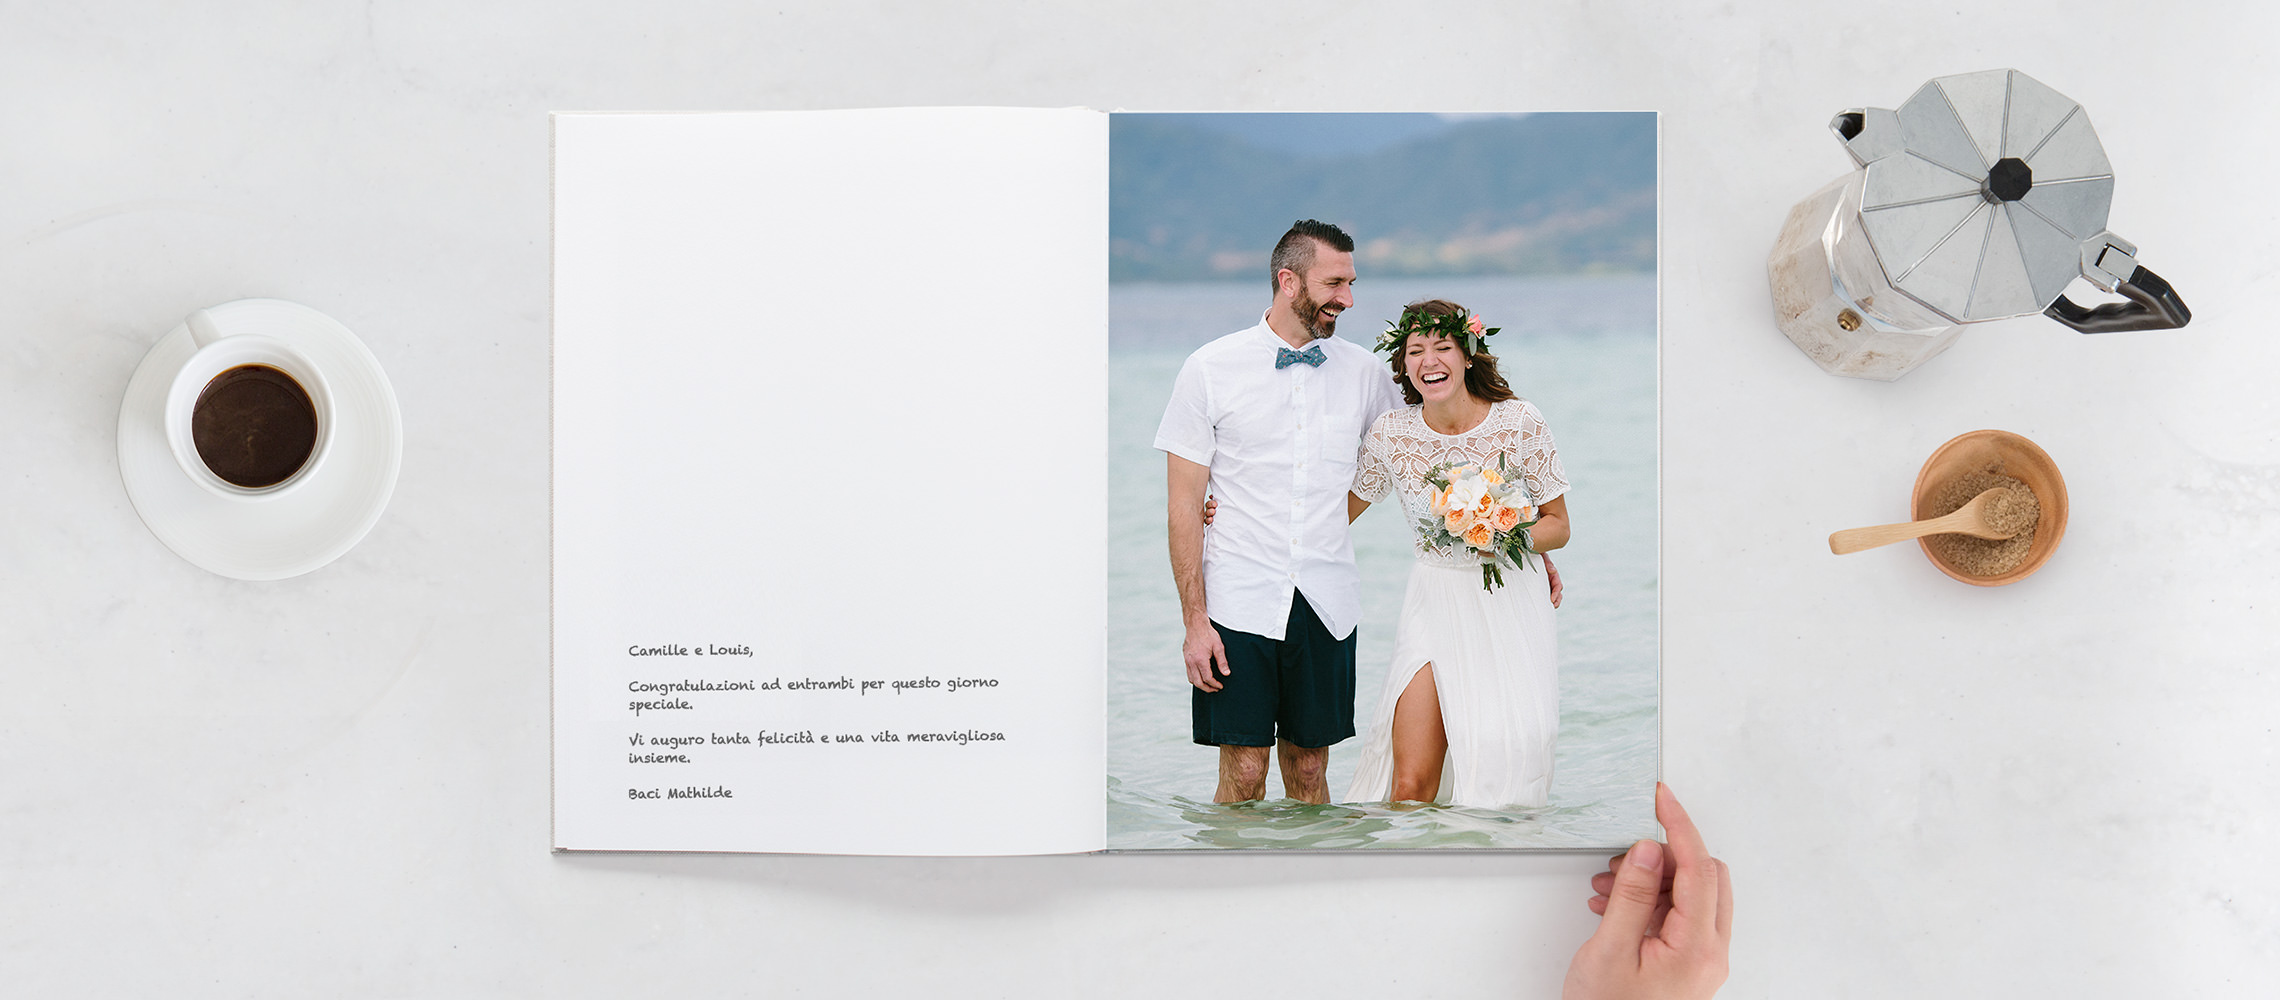 Libro degli ospiti aperto con gli sposi che ridono nell'acqua e scrivono sulla pagina bianca.